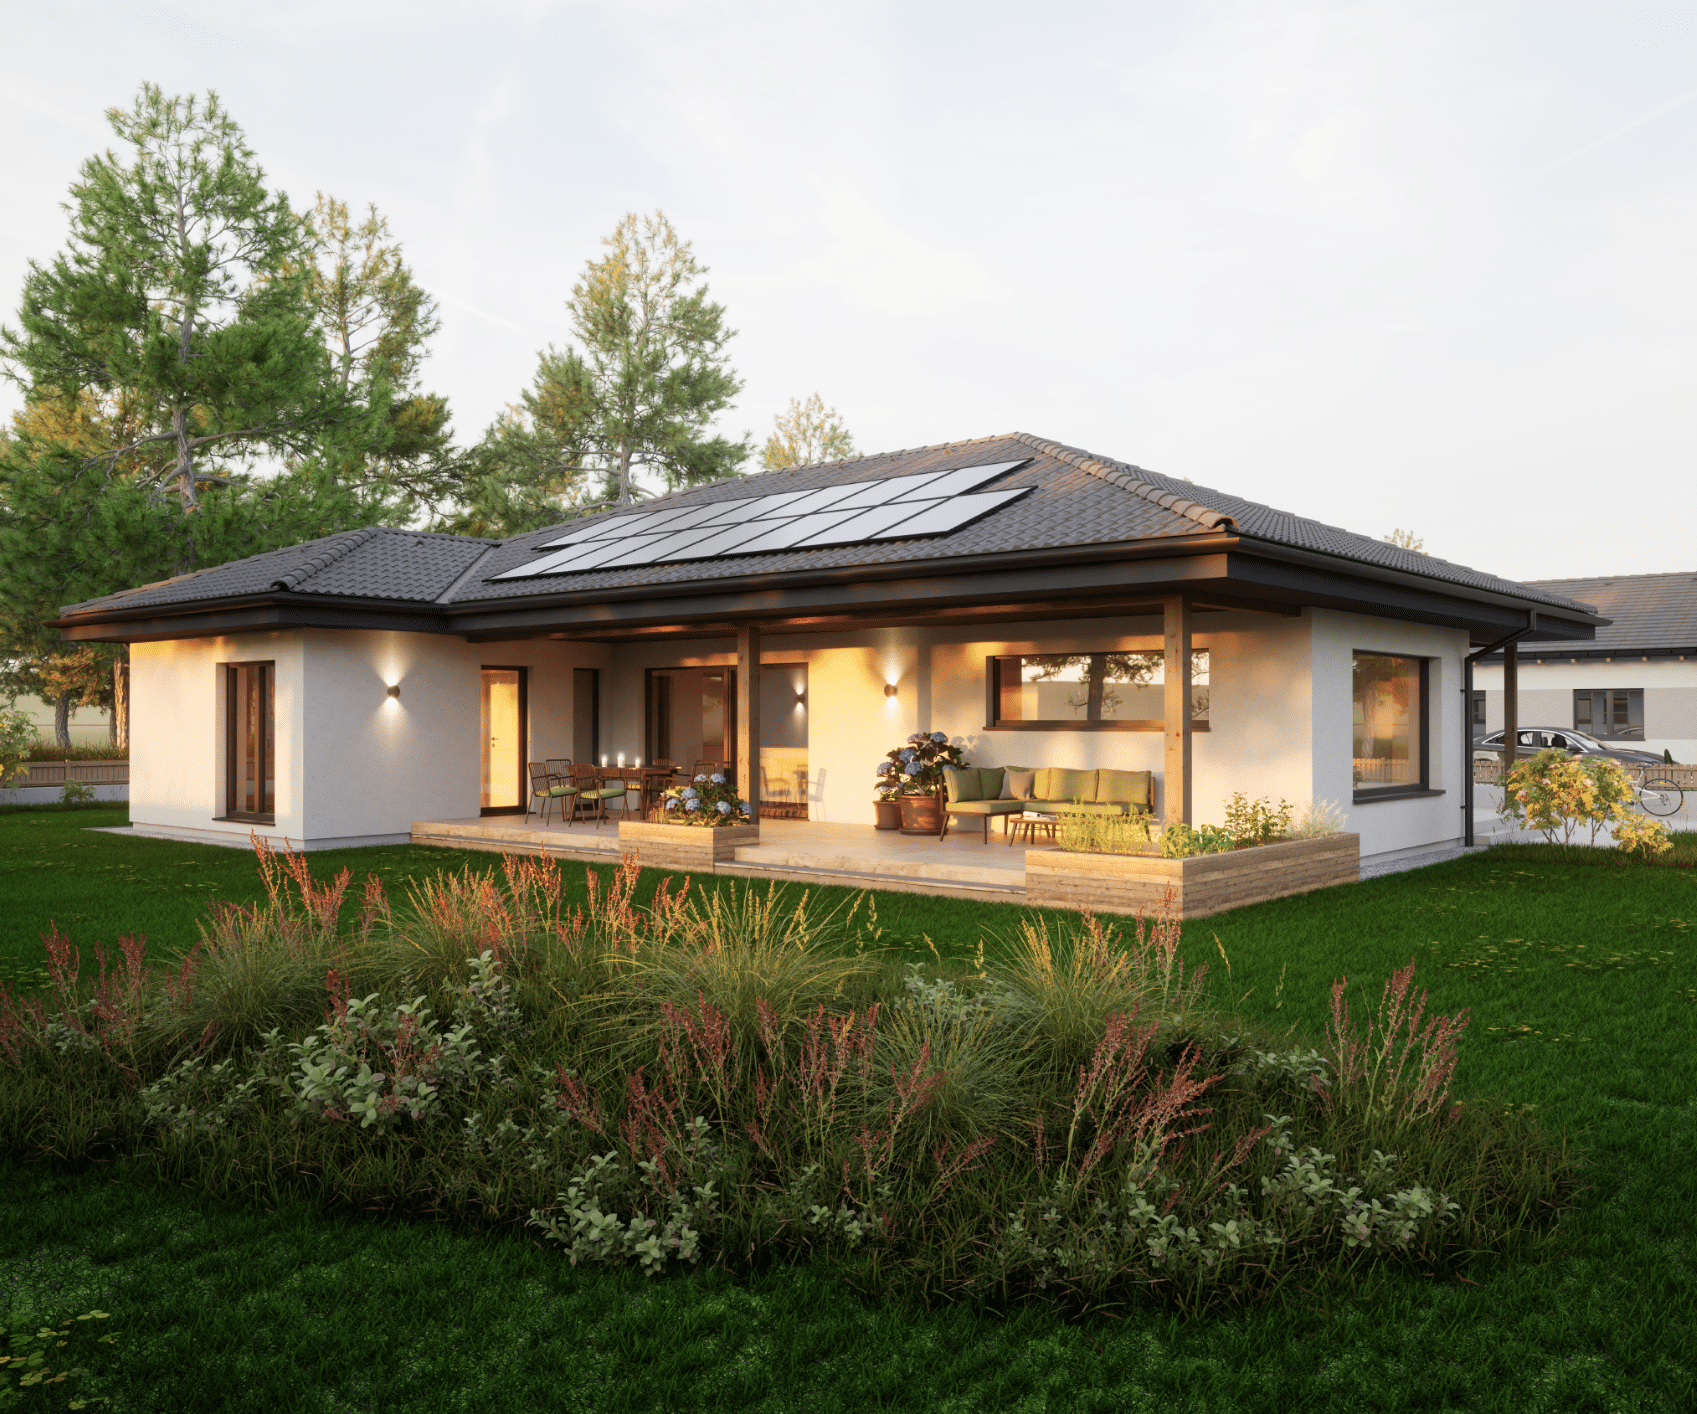 HARTL HAUS zeigt einen modernen, weißen Bungalow mit dunklem Dach, dunklen Türrahmen, Terrasse und Hochbeet.